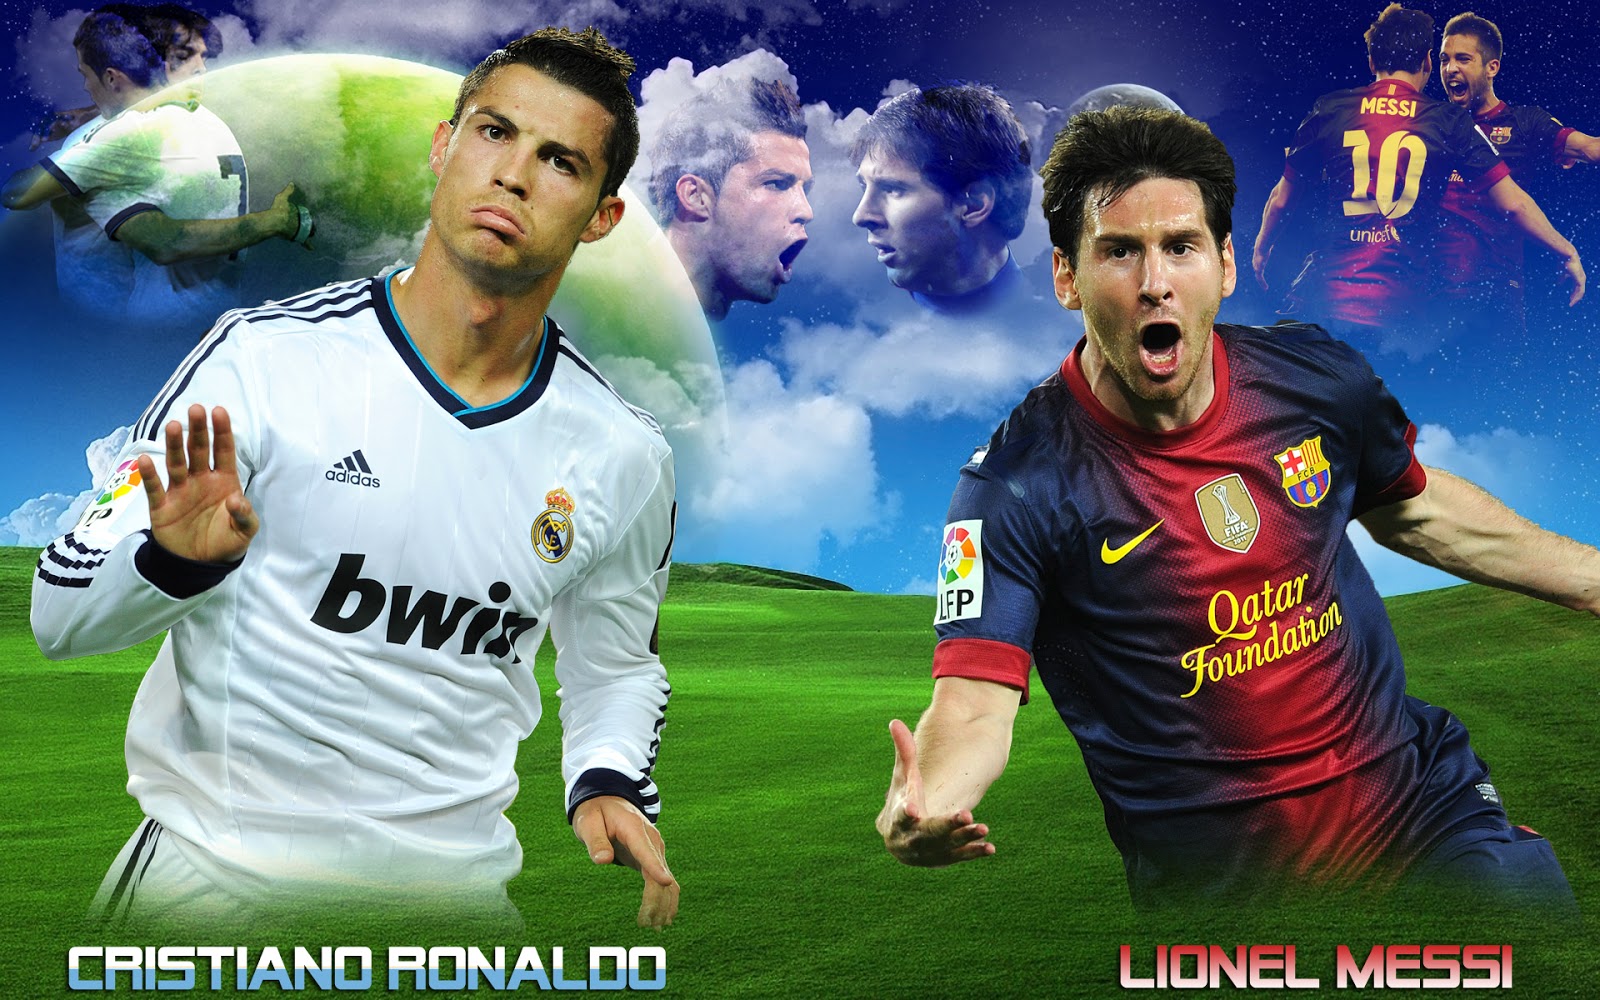 Cristiano Ronaldo vs Lionel Messi 2013 Wallpapers HD